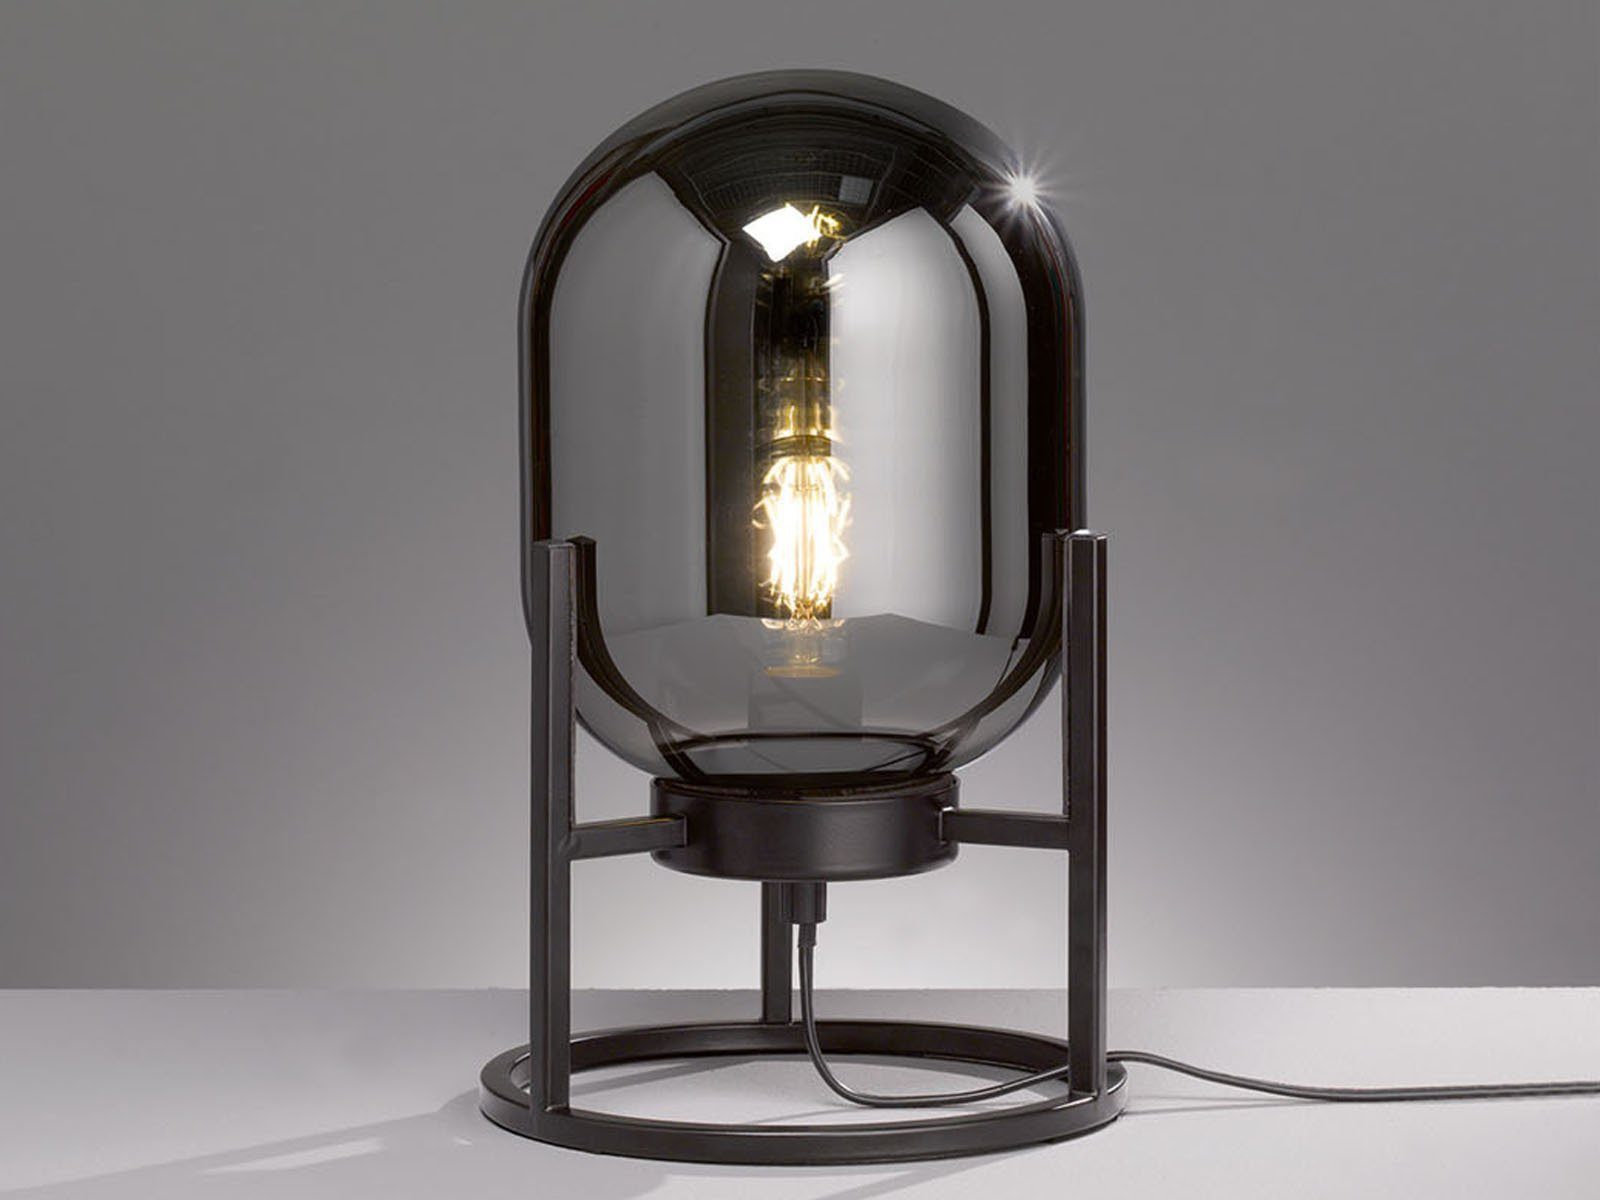 FISCHER & HONSEL LED Nachttischlampe, Industrial Tischleuchte mit  Rauch-Glas Lampen-Schirm Schwarz für ausgefallene Beleuchtung Wohnzimmer,  Flur & offene Galerie online kaufen | OTTO